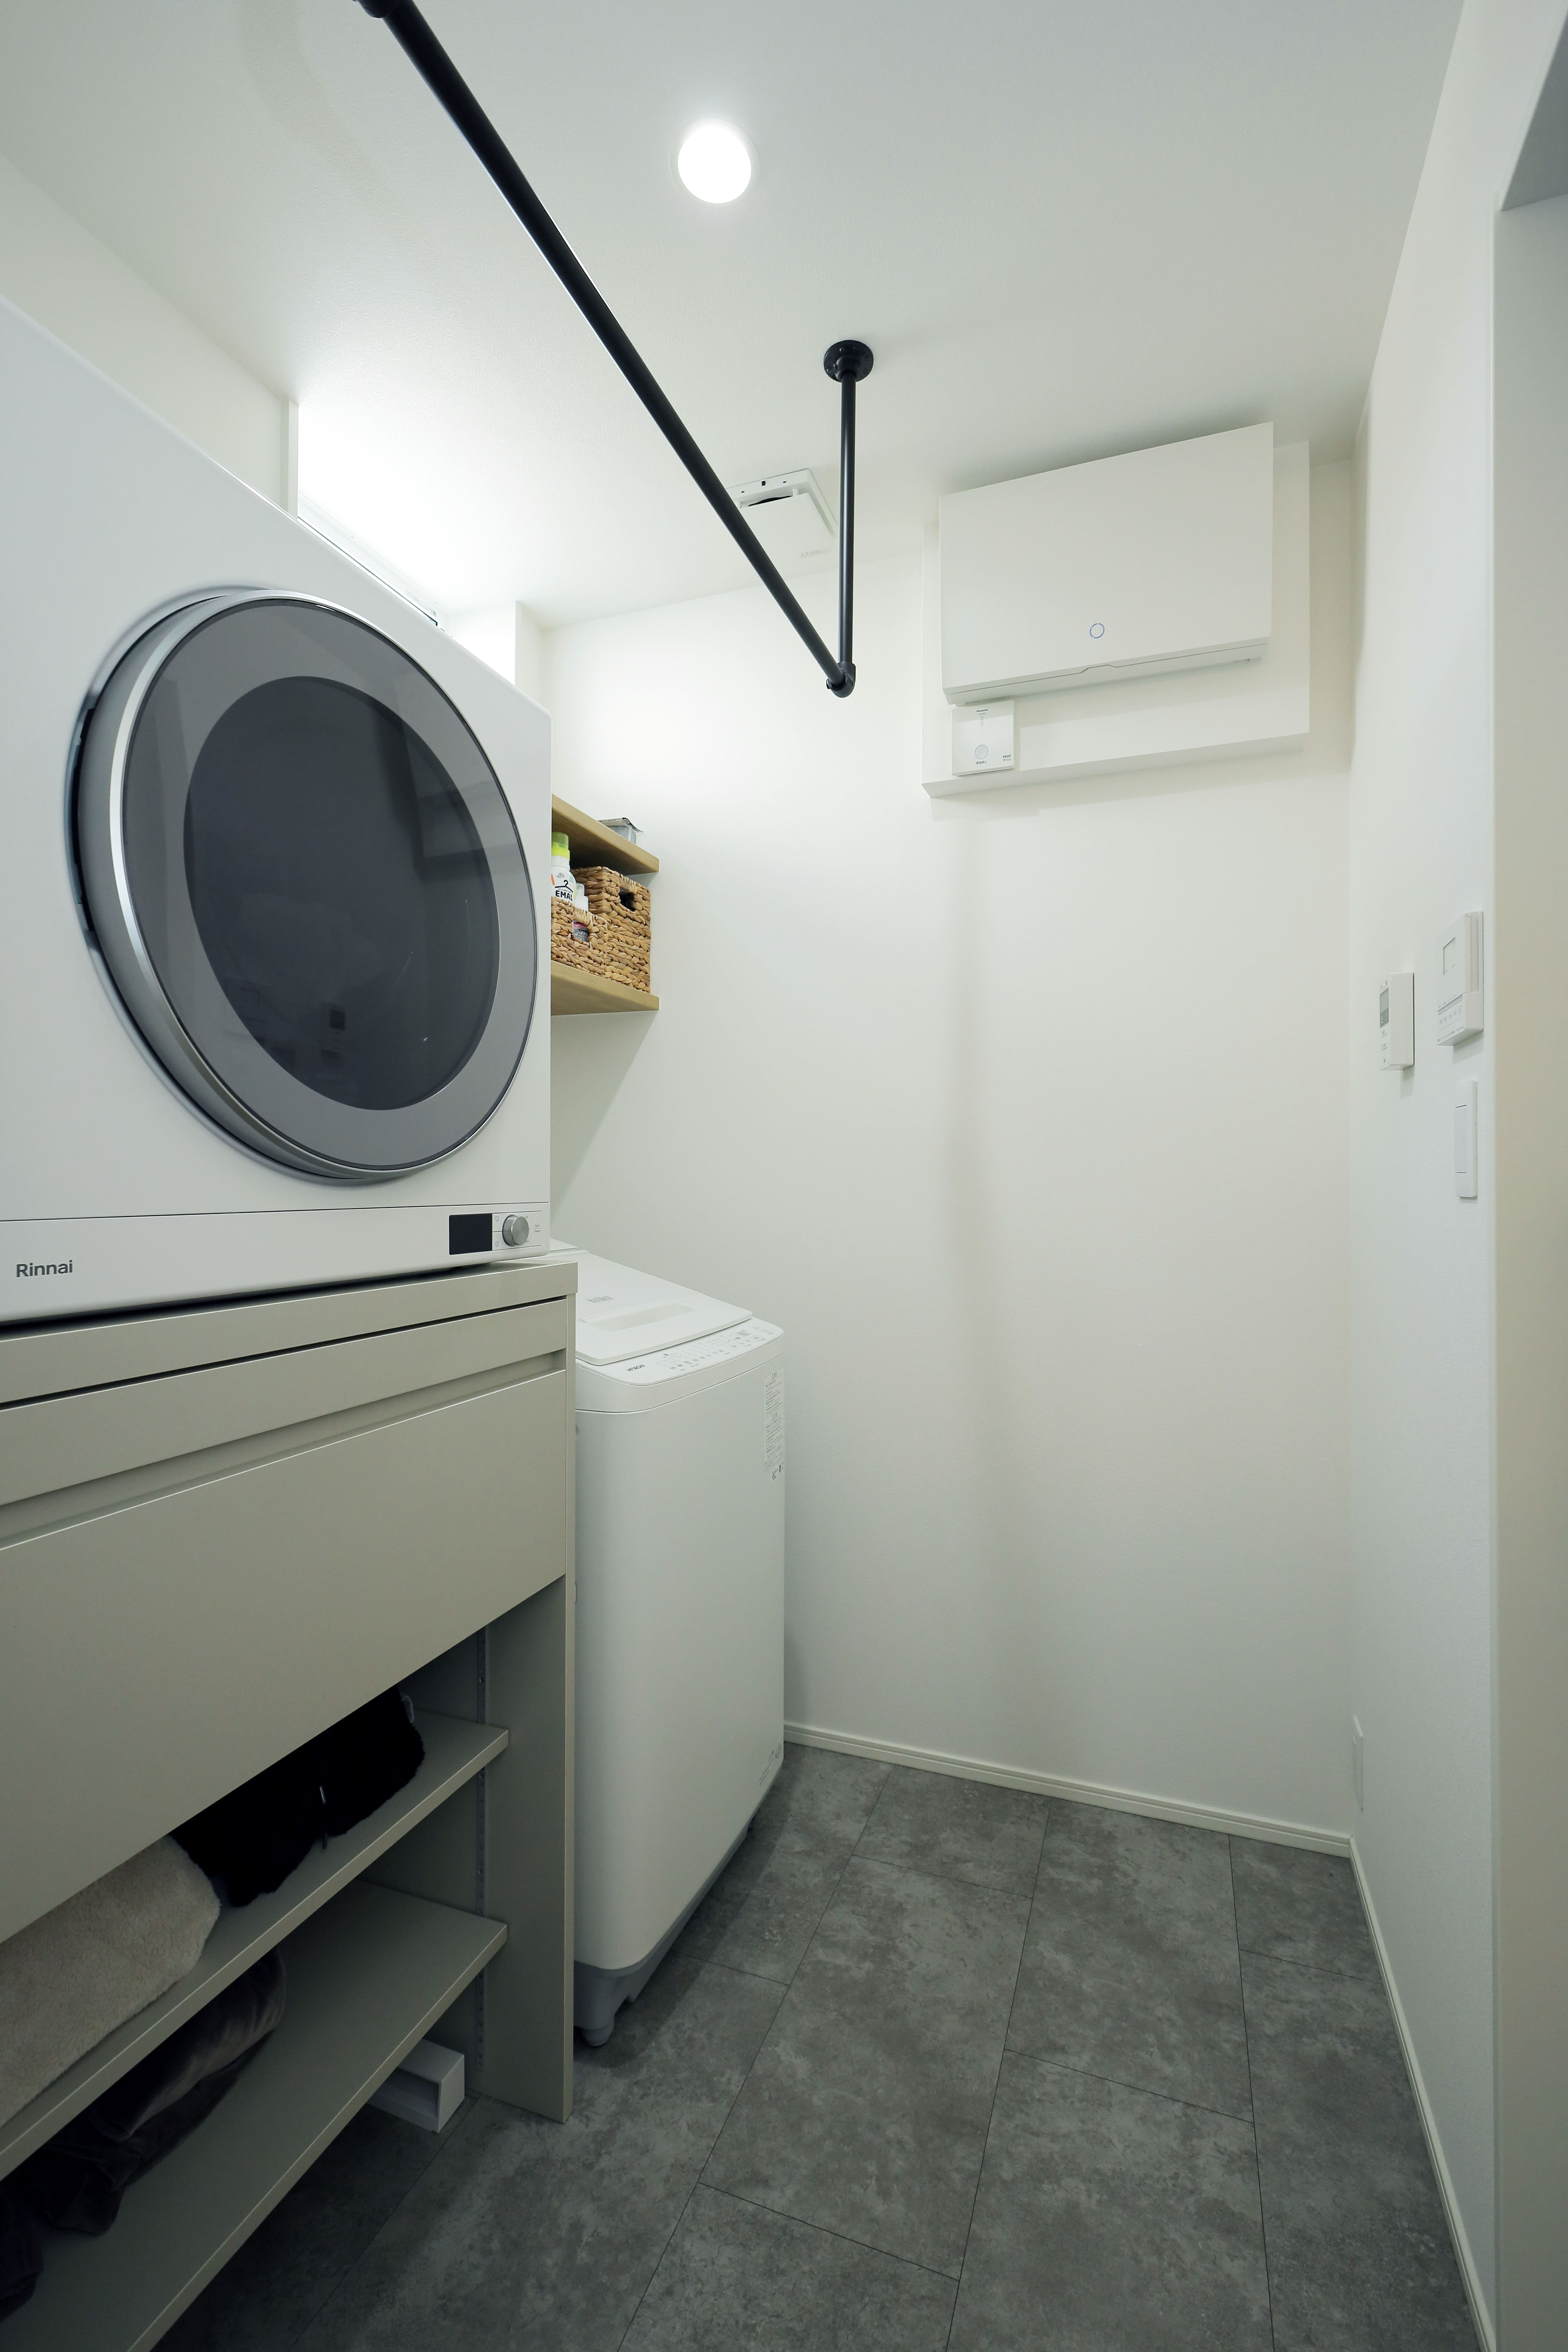 脱衣所に洗濯・乾燥機を置き、収納できる天板を取り付けて脱衣所内で洗濯物を畳めるようにした。